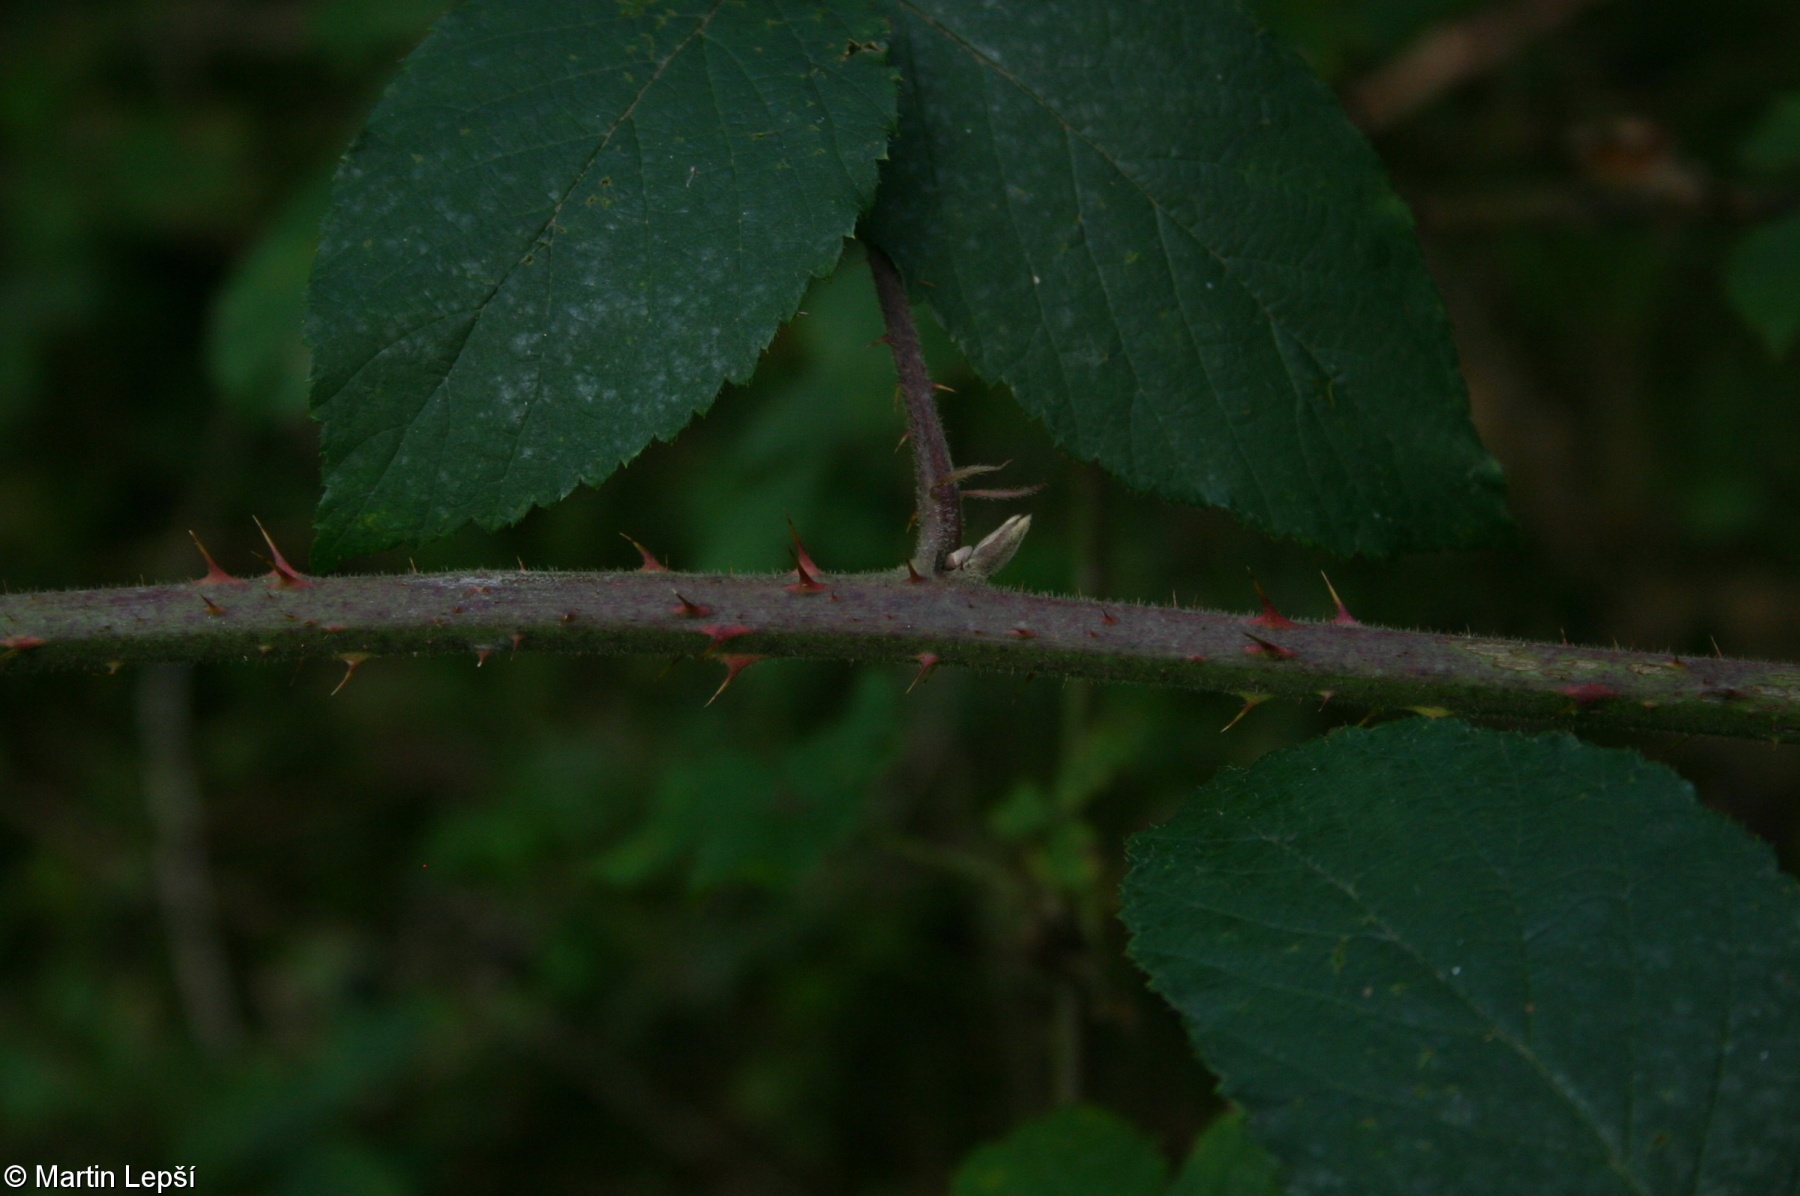 Rubus chaerophylloides – ostružiník nepravý